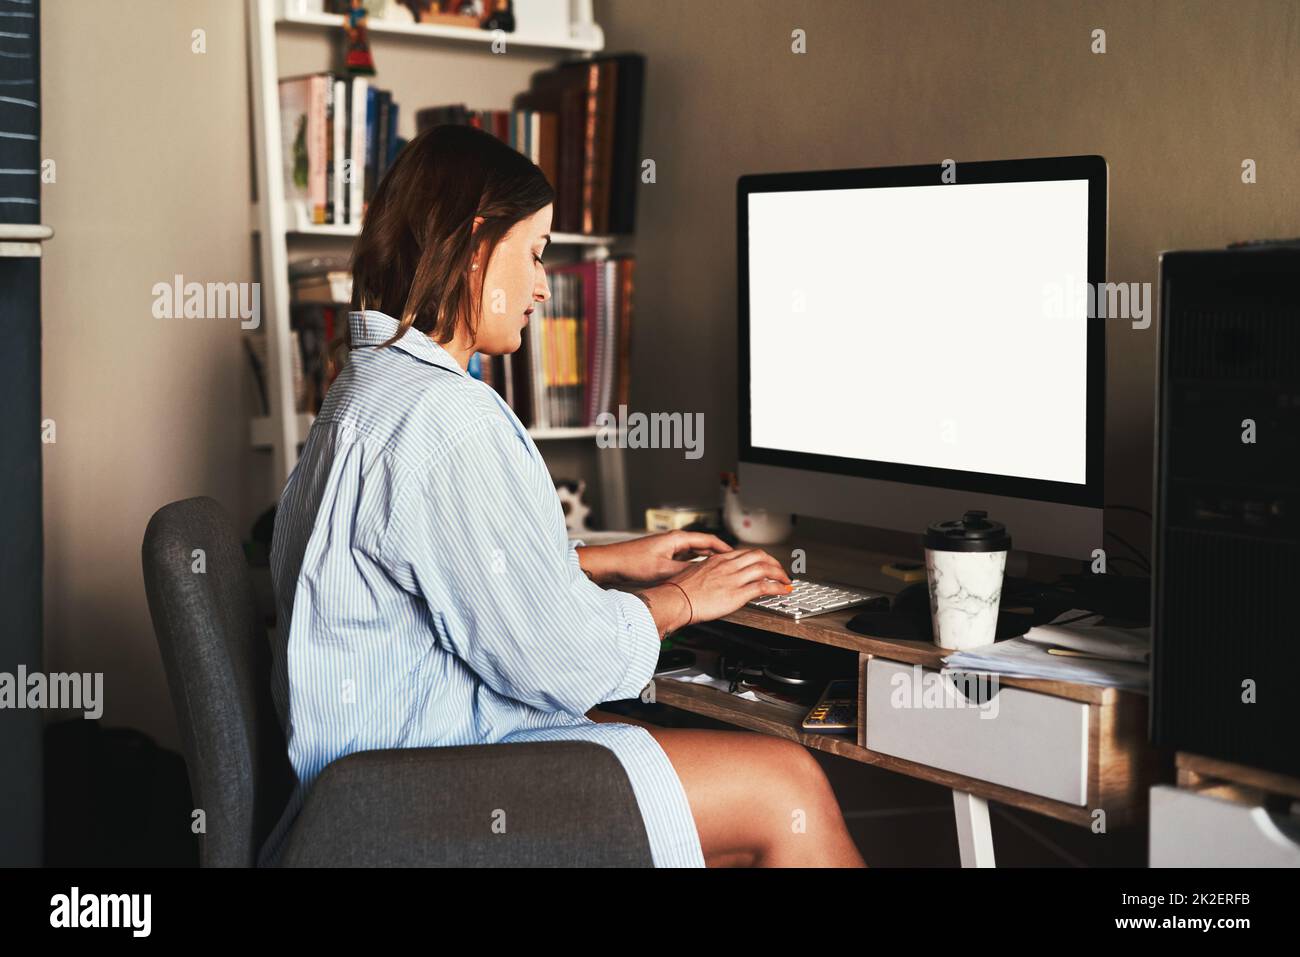 Von zu Hause aus zu arbeiten ist mein Favorit. Eine kurze Aufnahme einer attraktiven jungen Geschäftsfrau, die allein in ihrem Heimbüro sitzt und ihren Computer benutzt. Stockfoto